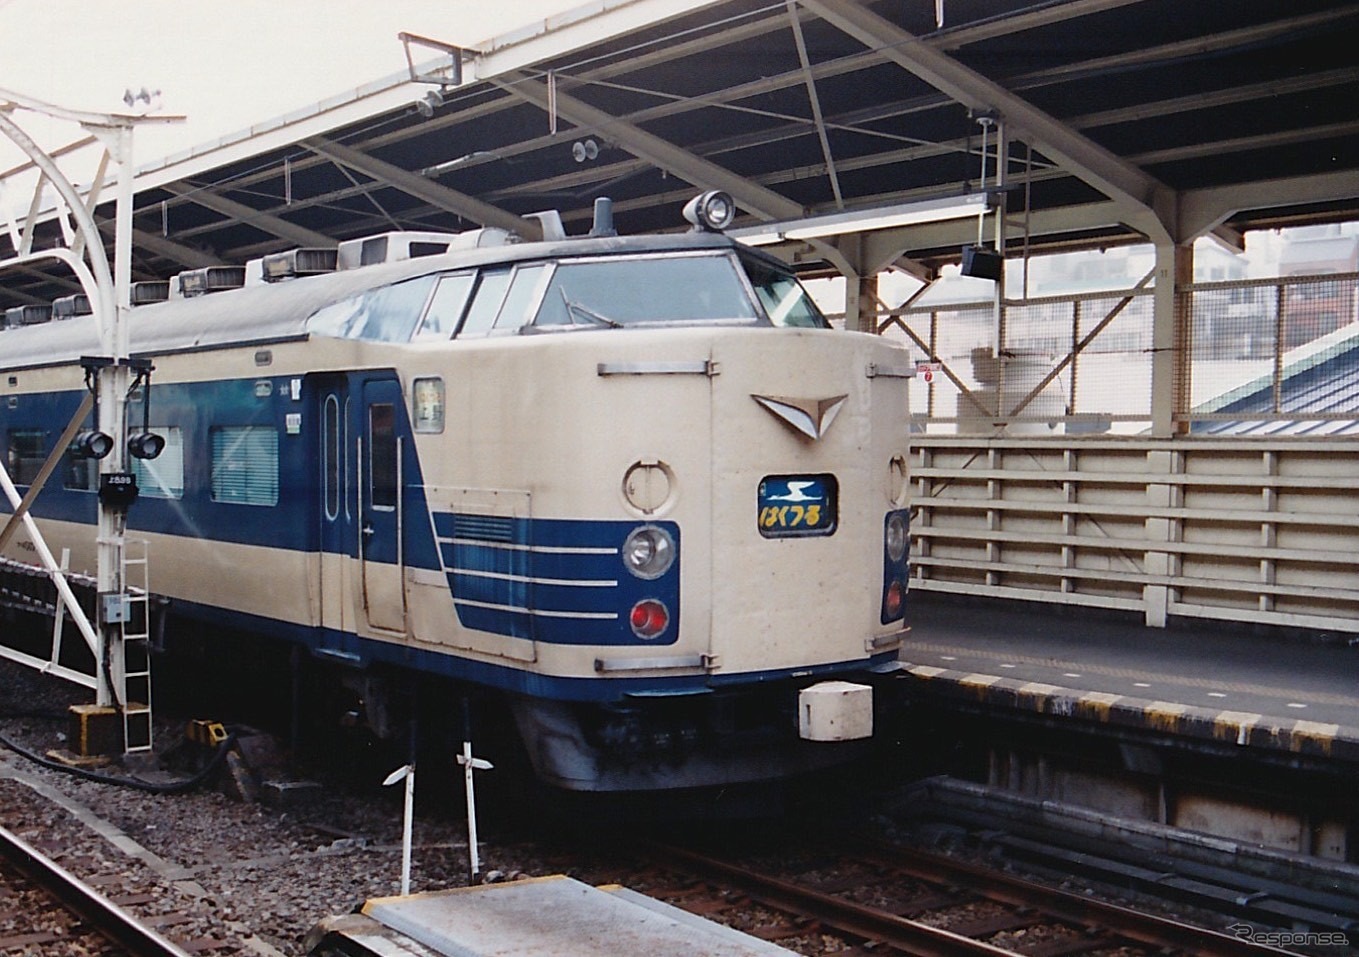 1989年8月30日、上野駅、上り「はくつる」